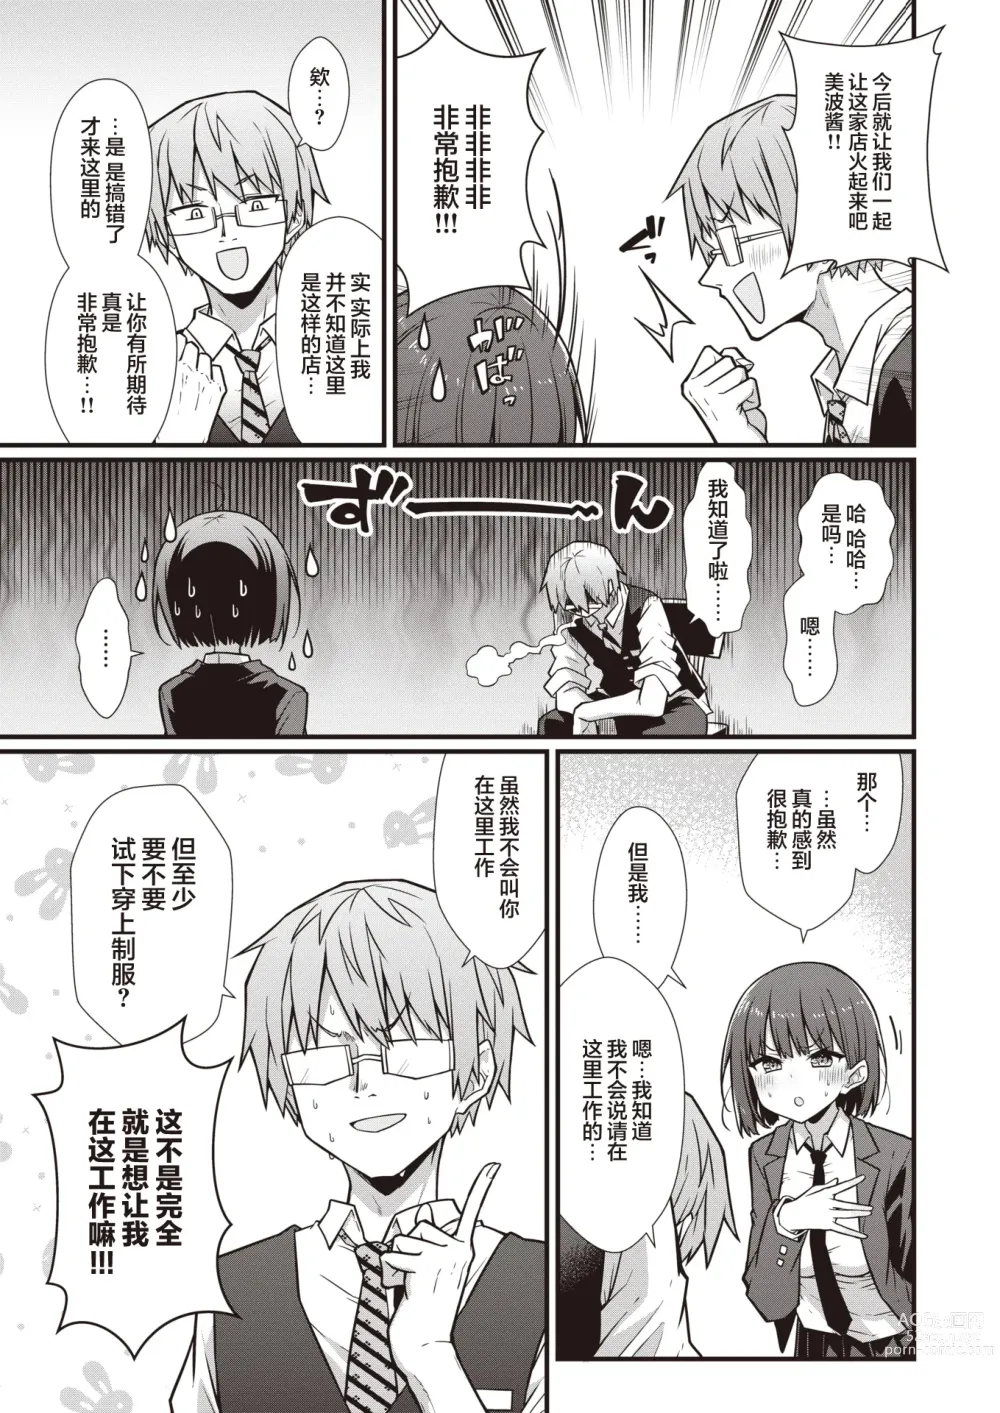 Page 6 of manga Hatarake! Minami-chan!